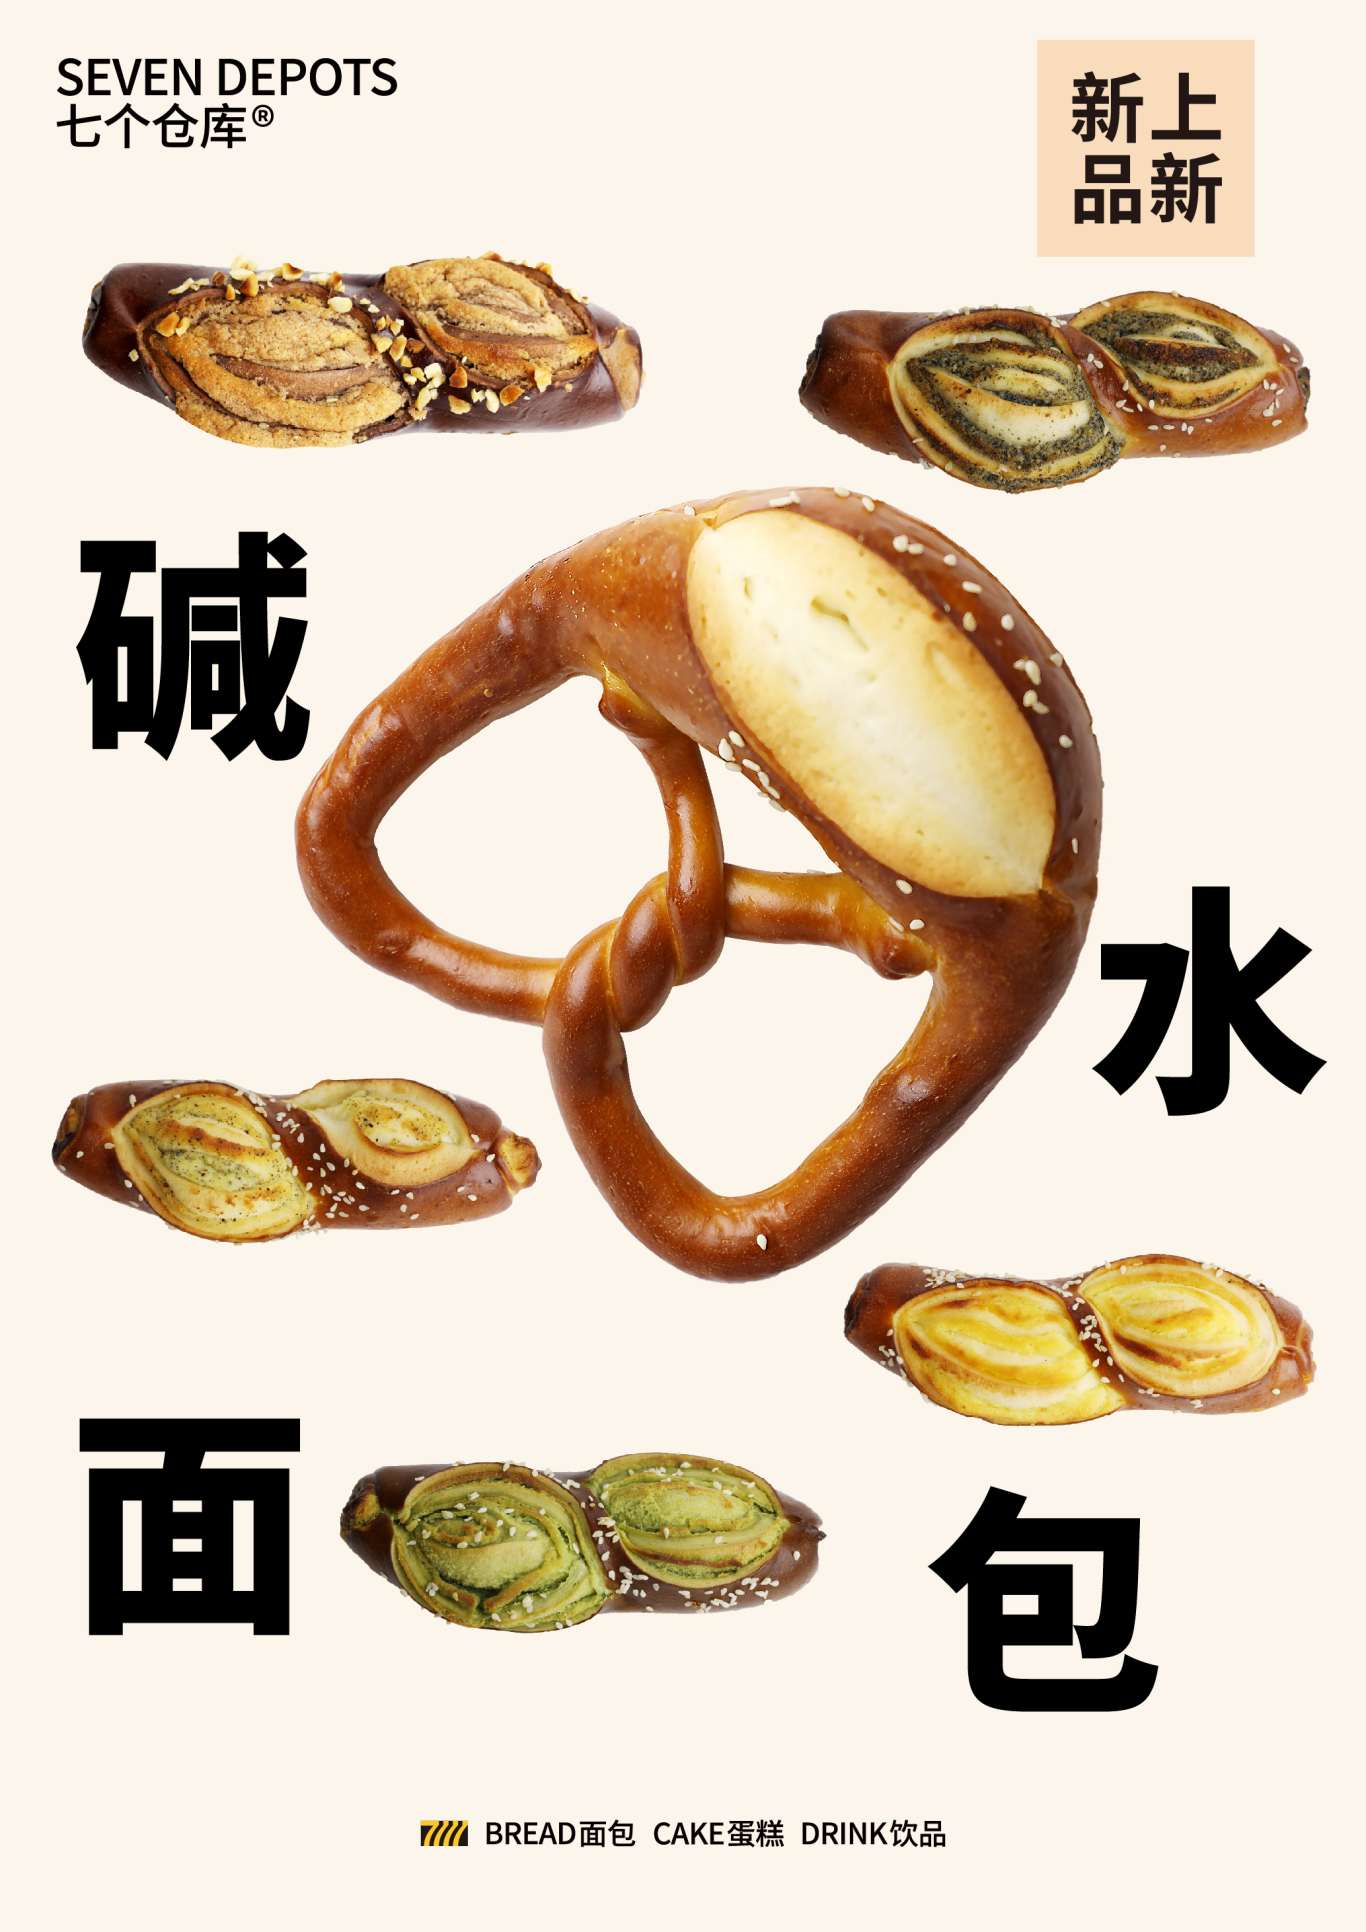 面包店宣传物料海报等设计图11